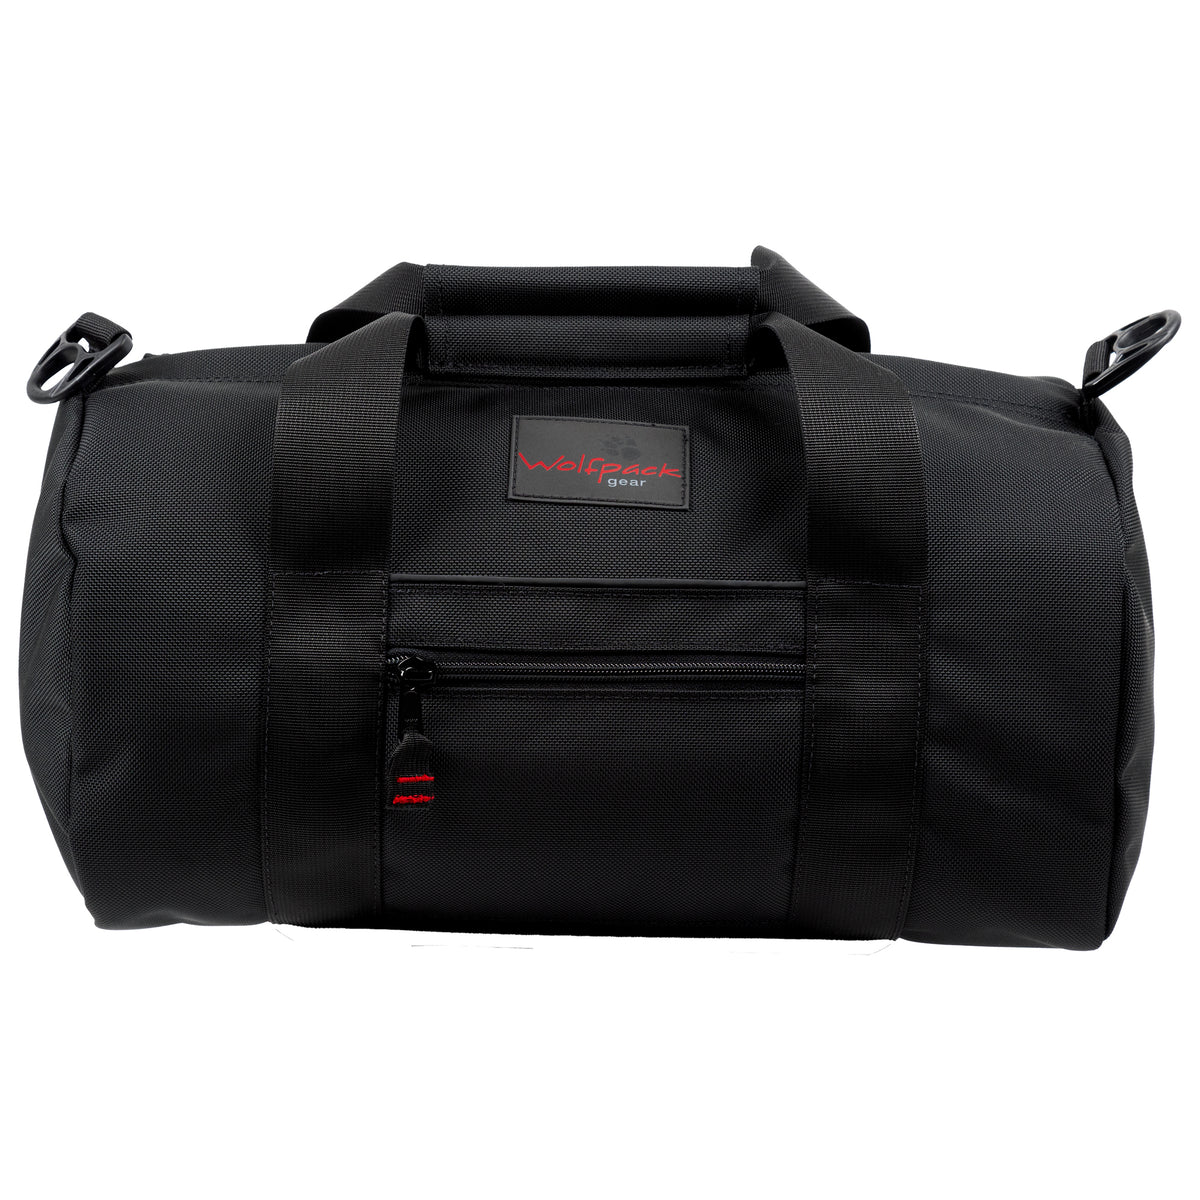 Wolfpack Gear™ Duffel Bags